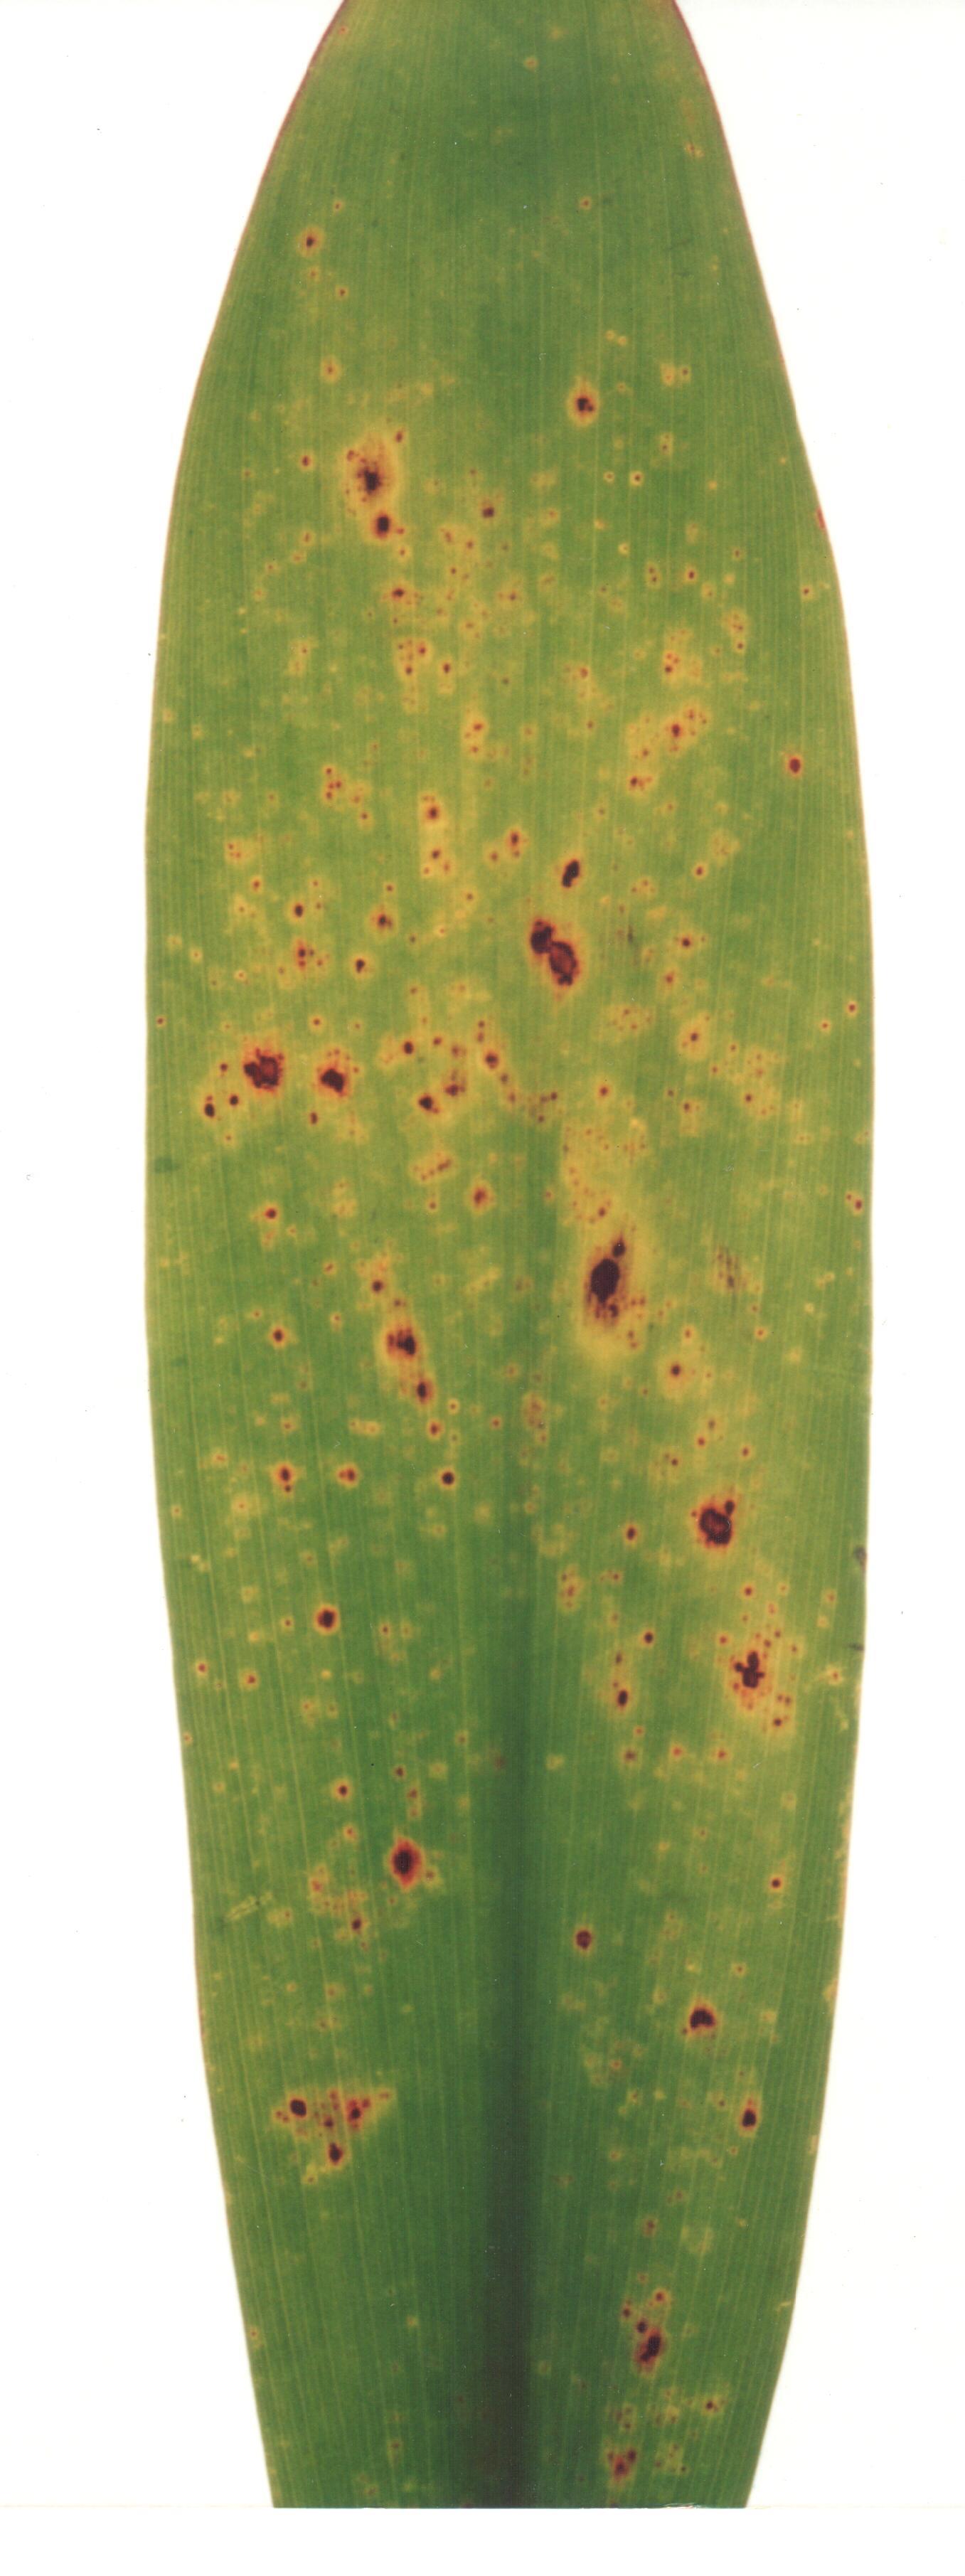 <p><b><p>Detalhe de folha de <em>Yucca gigantea</em> infectada por <em>Badnavirus</em>, apresentando manchas cloróticas e necróticas.</p></b></p><p>Autor: Lígia M. Lembo Duarte</p>